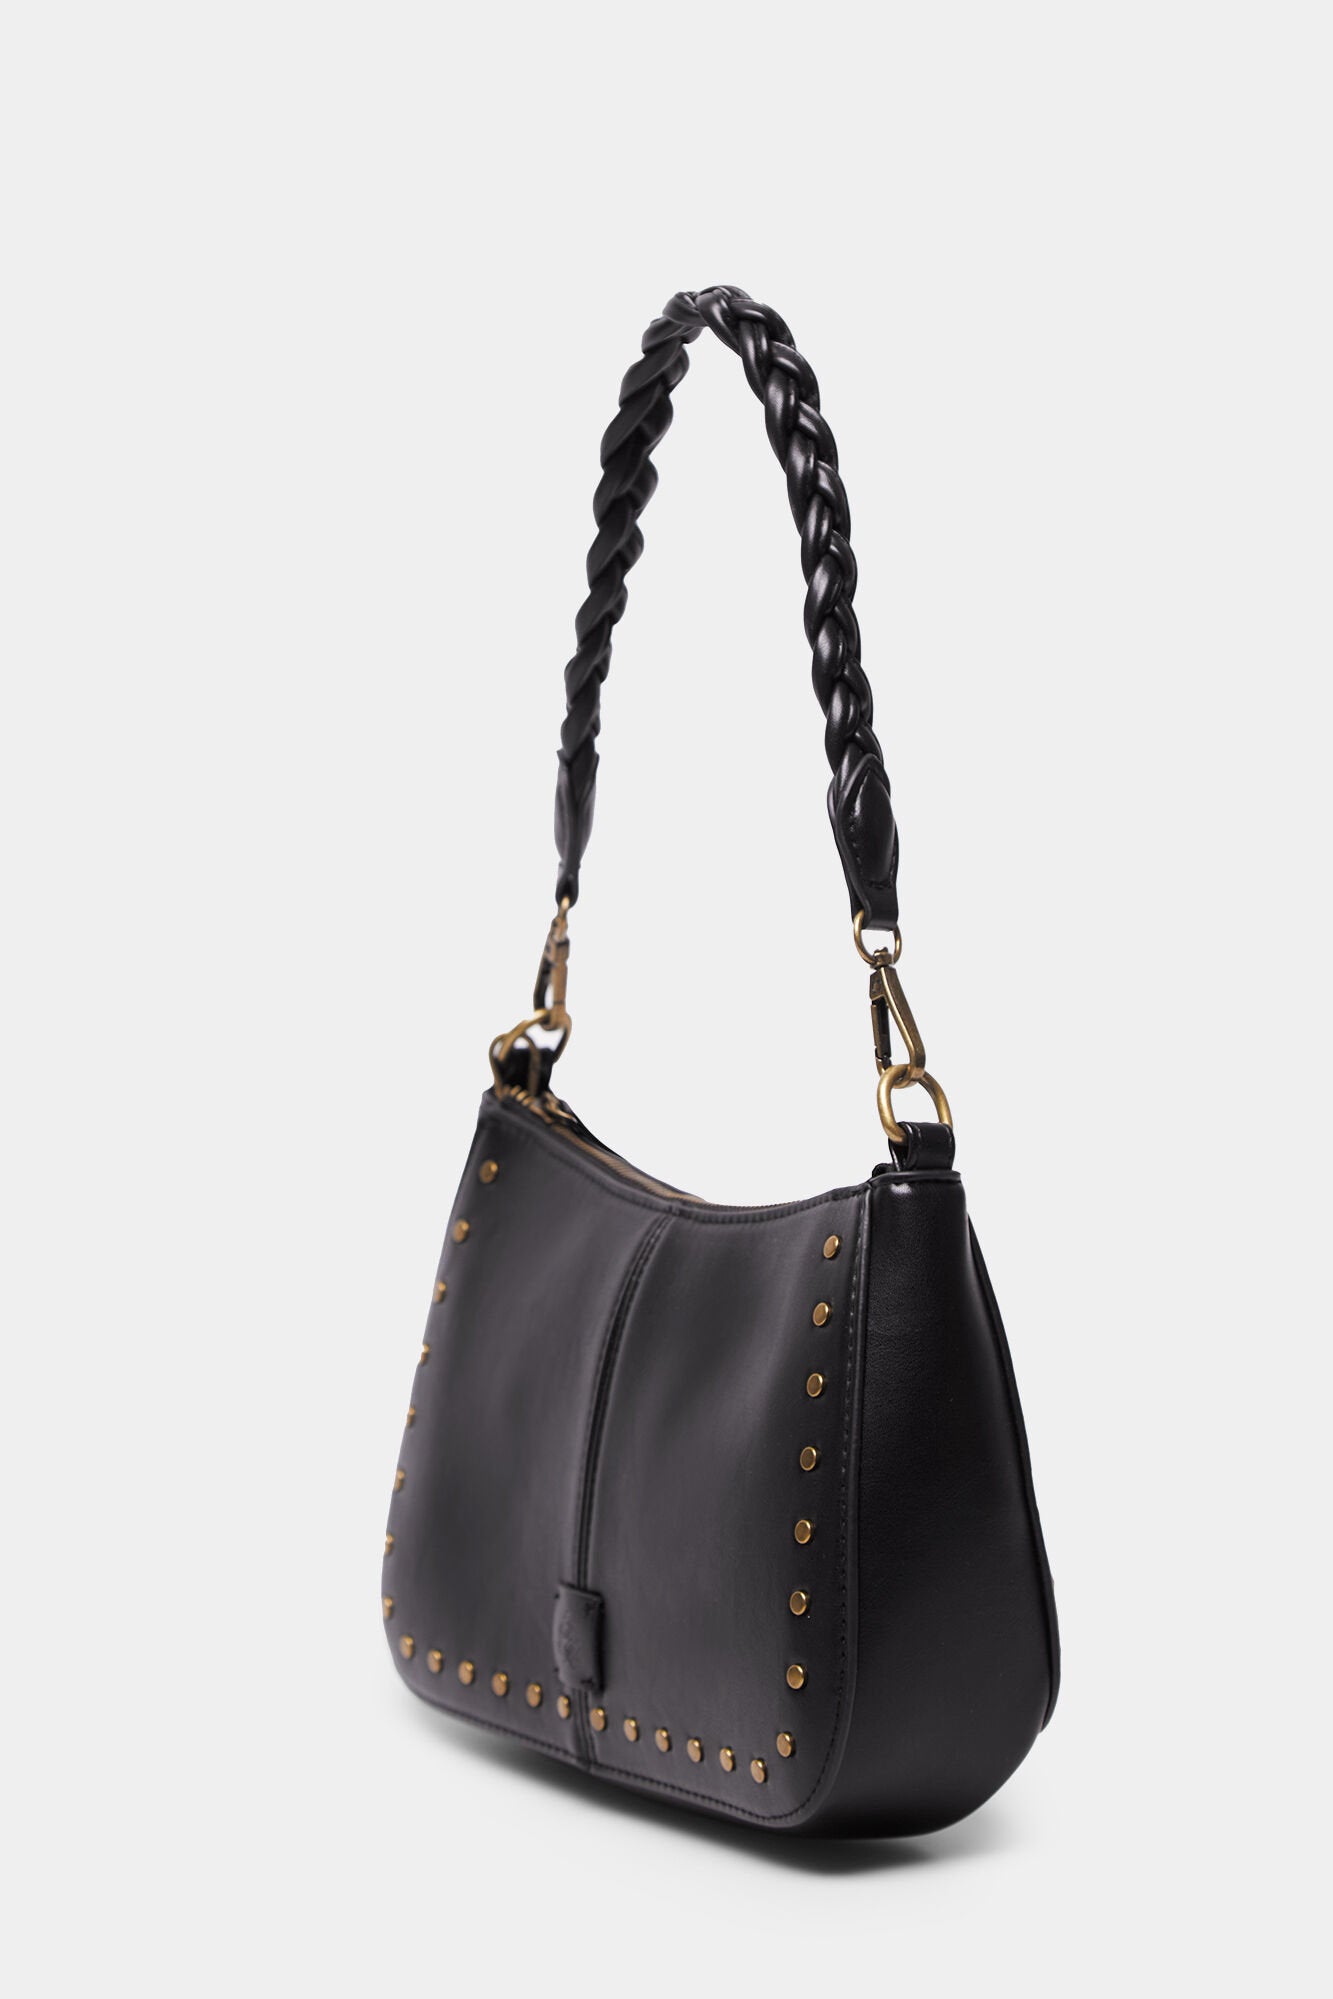 Black Shoulder Bag With Braided Strap_8527381_01_04